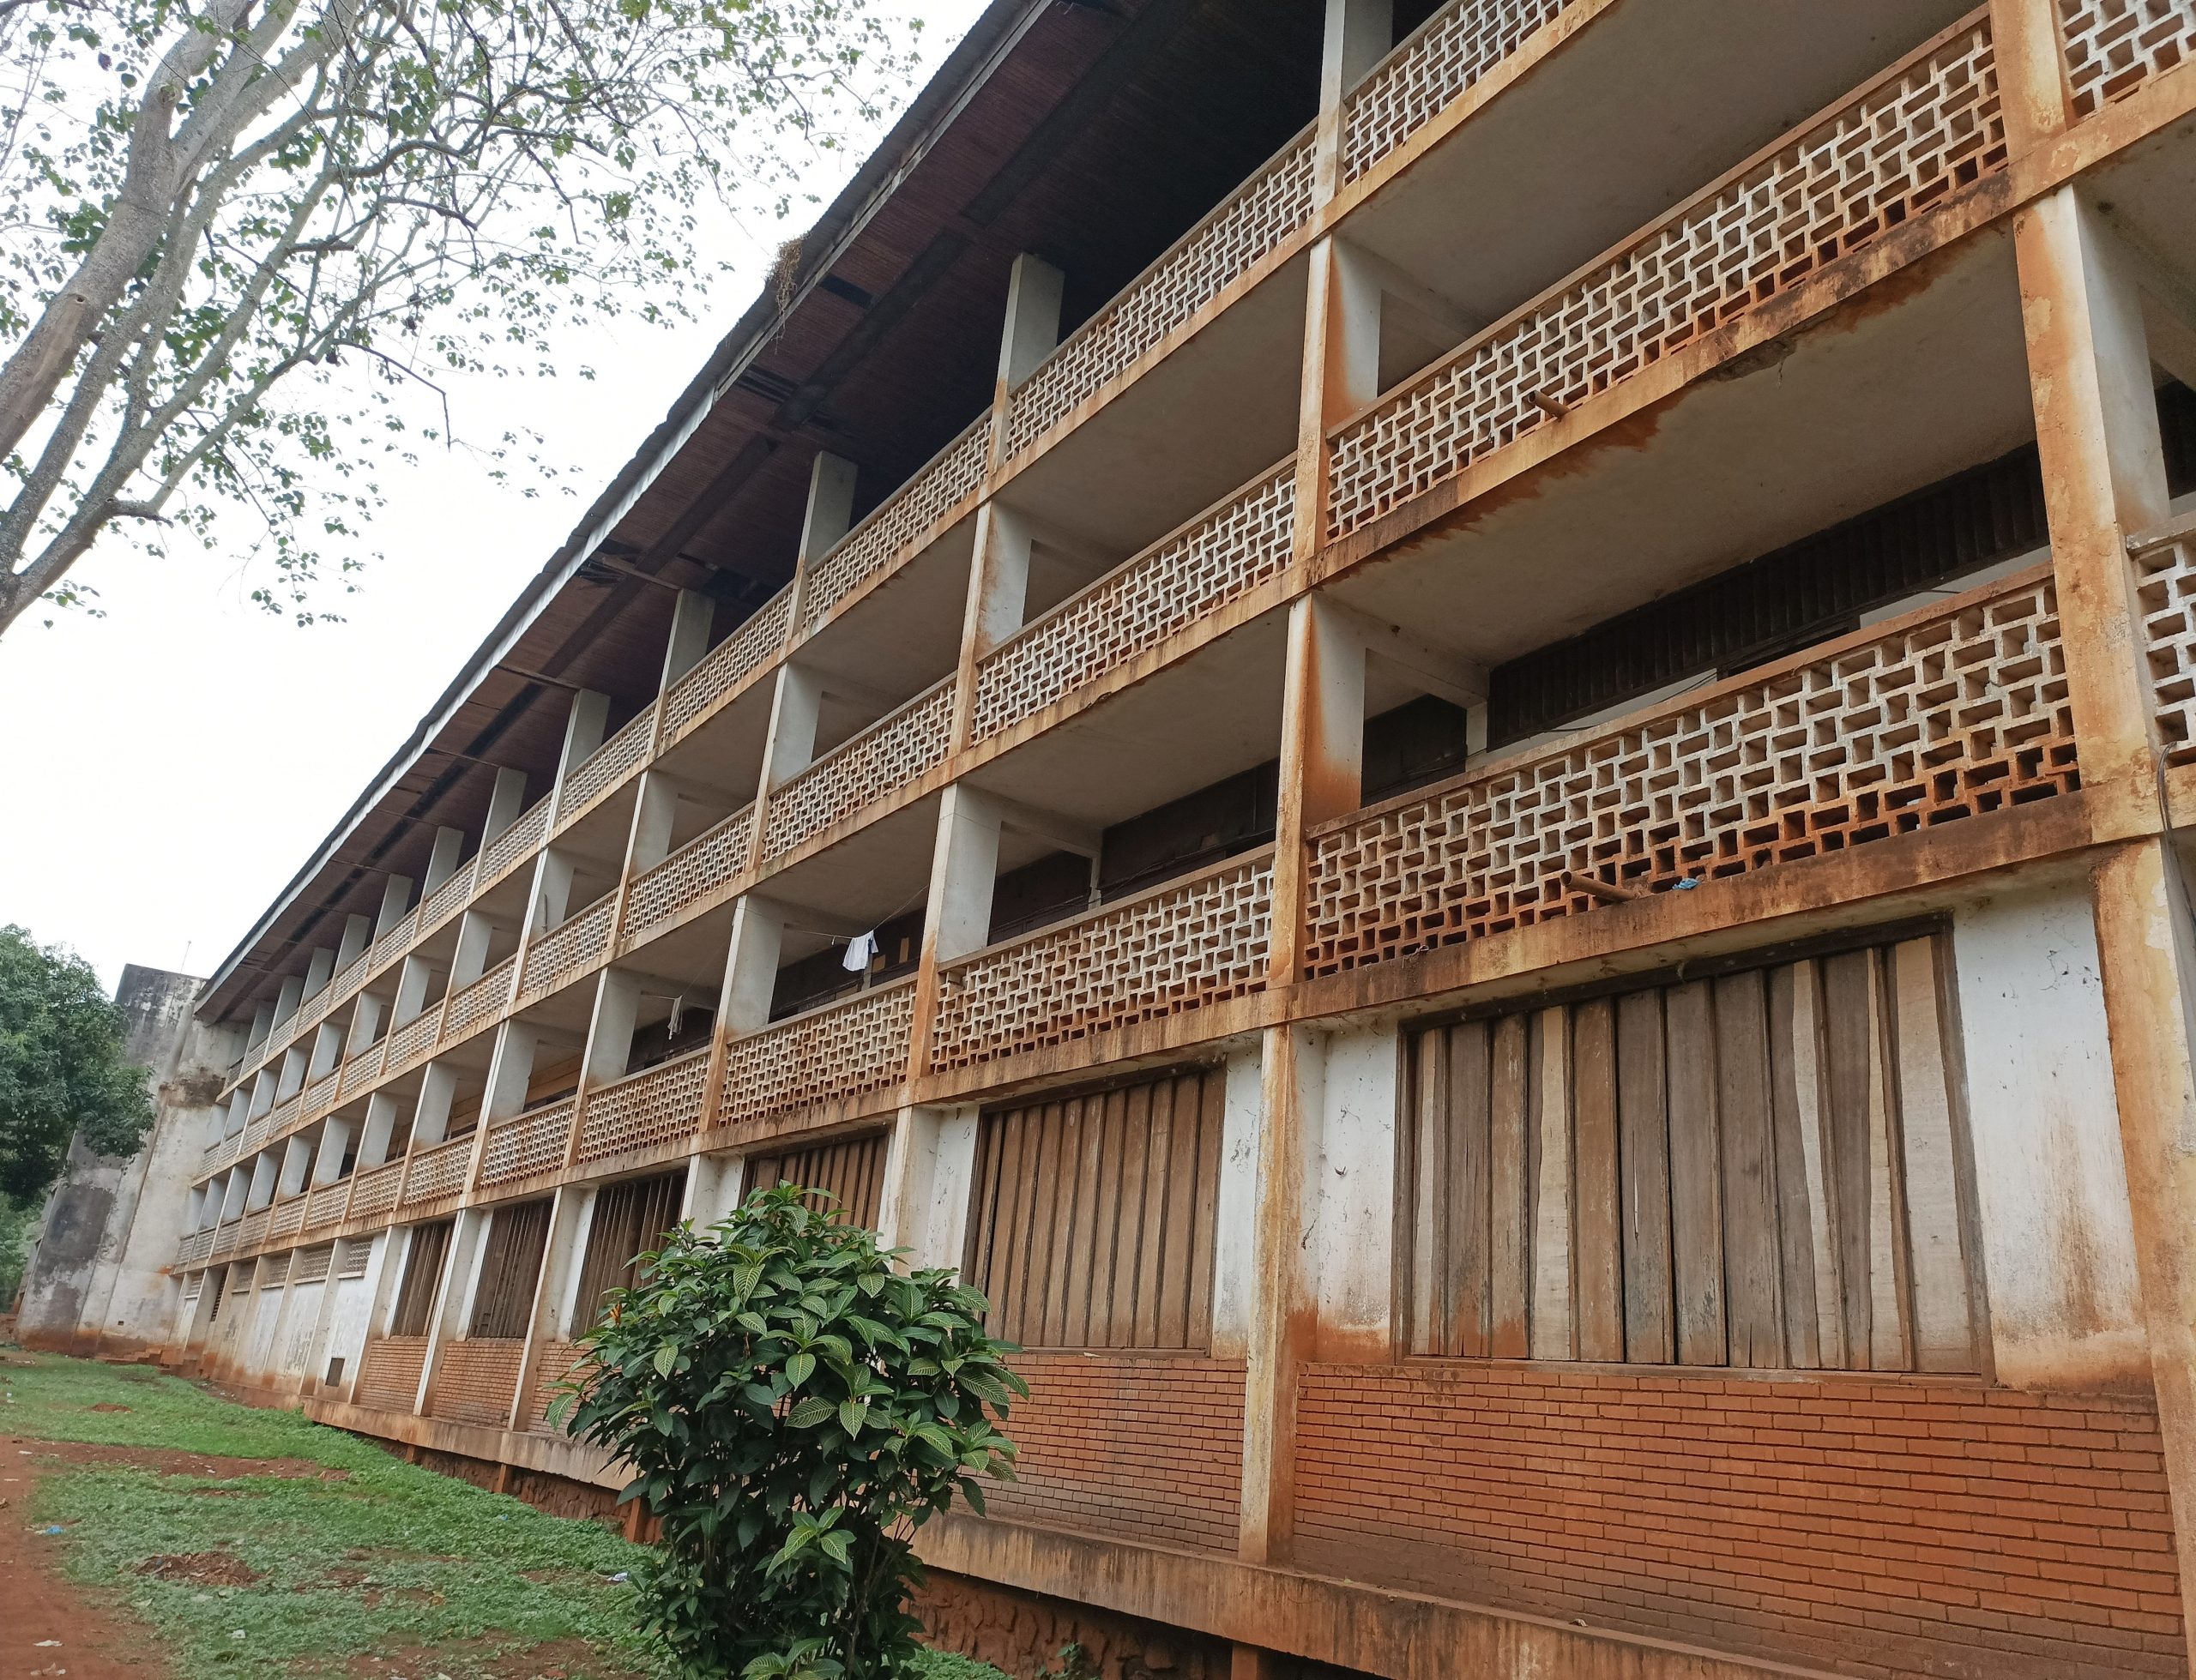 Centrafrique : que reste-t-il de l’Institut supérieur de développement rural de Mbaïki ?